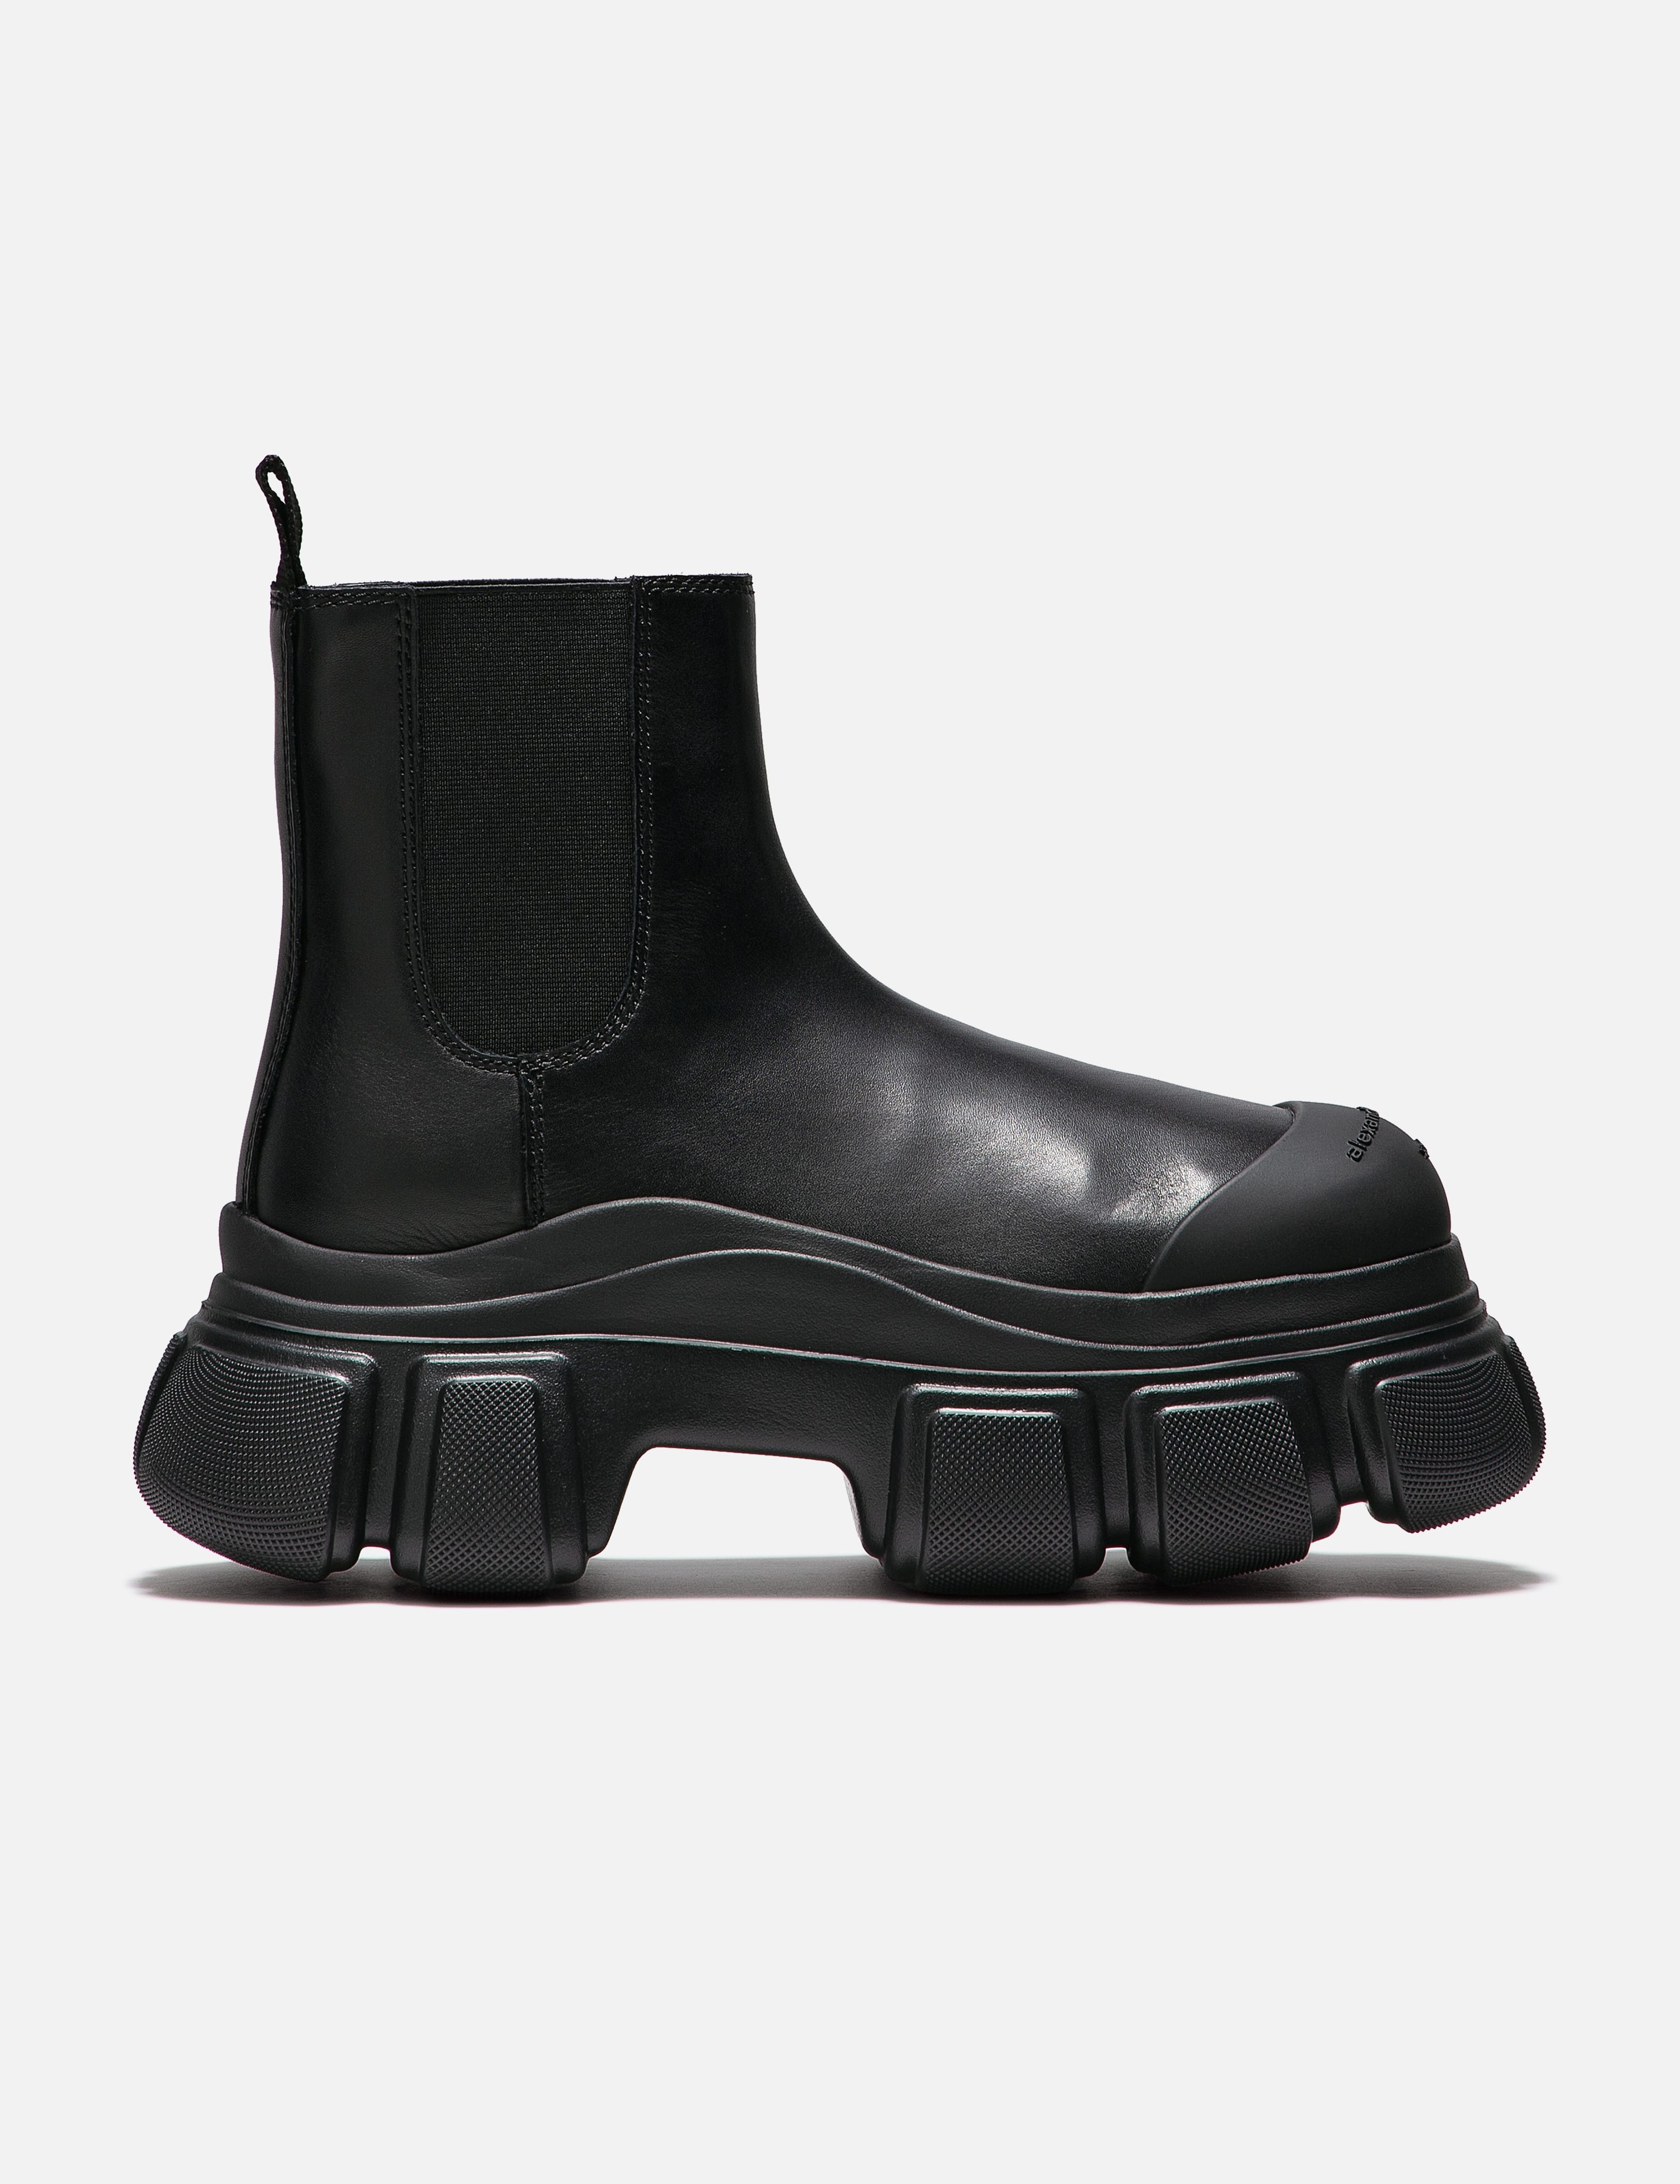 ロングヒール高さALEXANDER WANG ブーツ EU36(22.5cm位) 黒